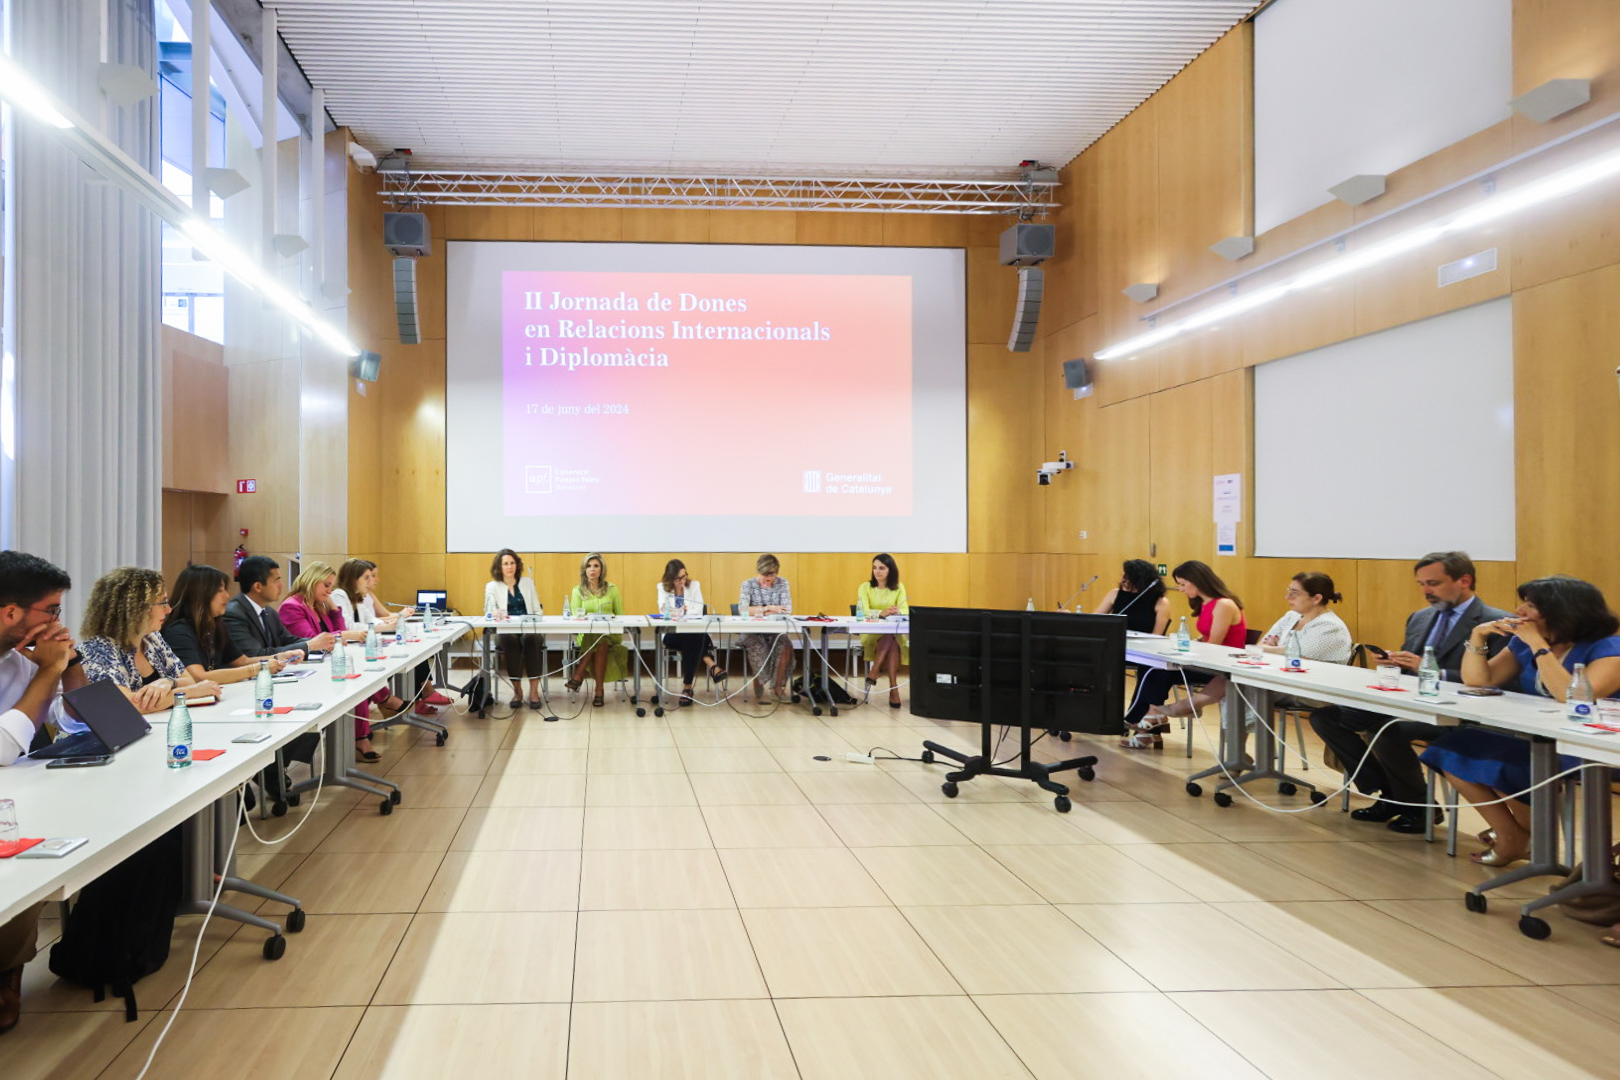 La Universitat Pompeu Fabra acull la II Jornada de Dones en Relacions Internacionals i Diplomàcia